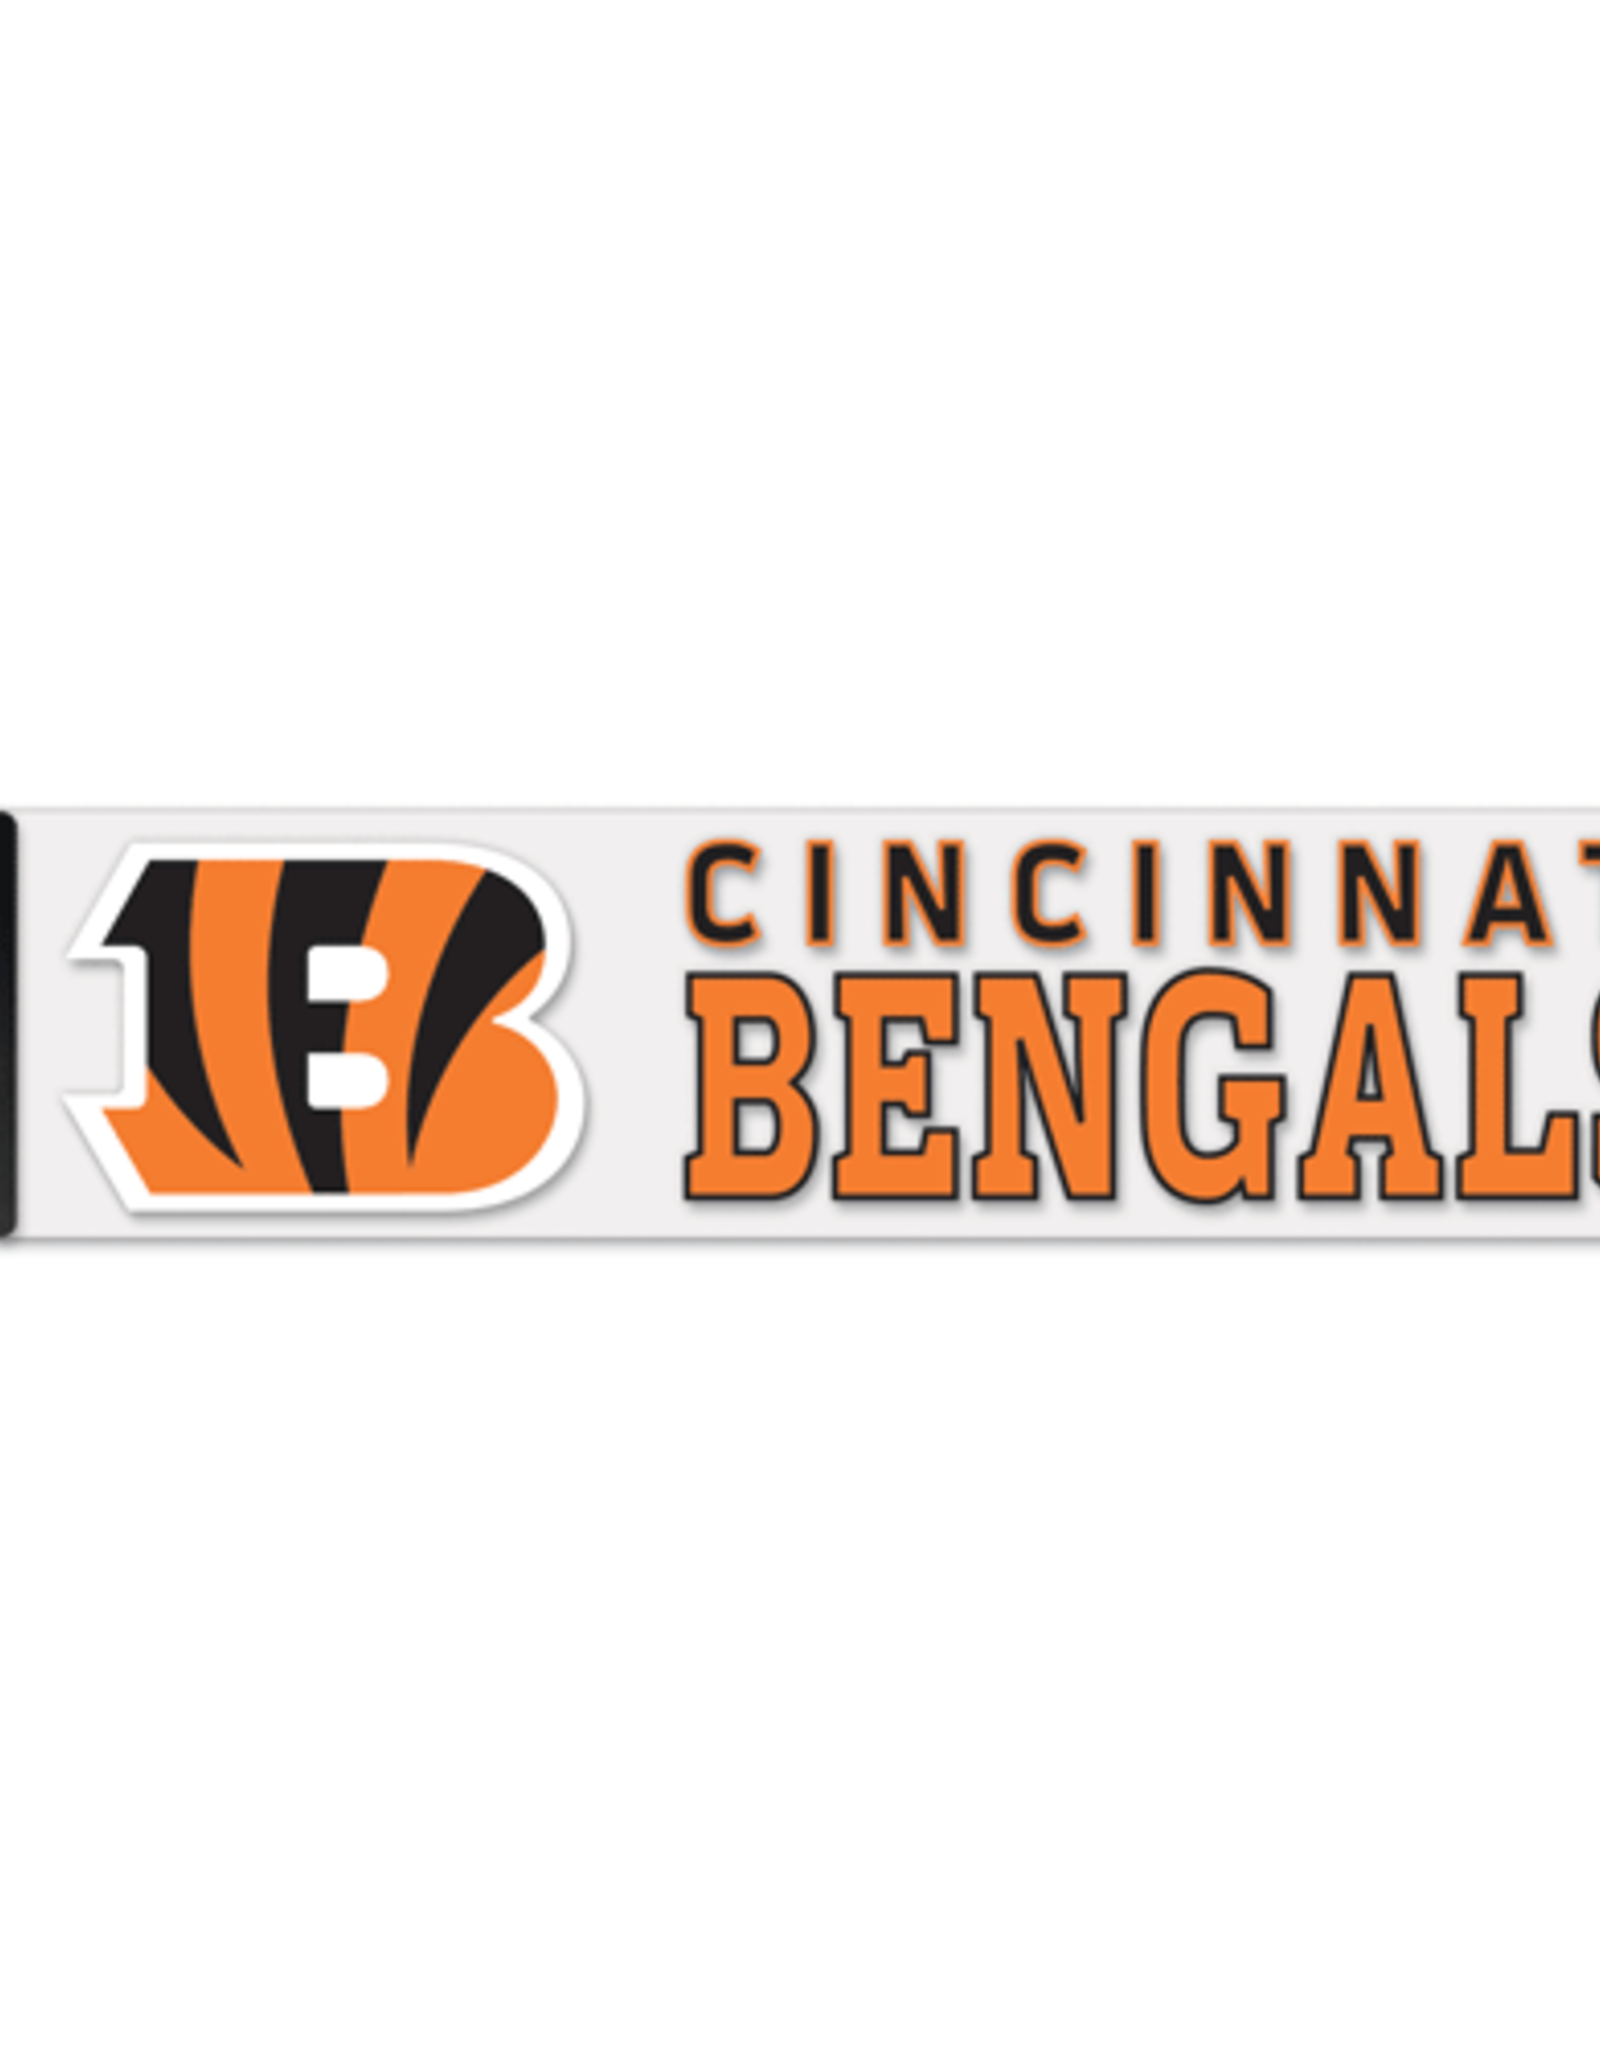 WINCRAFT Cincinnati Bengals 4x17 Perfect Cut Decals